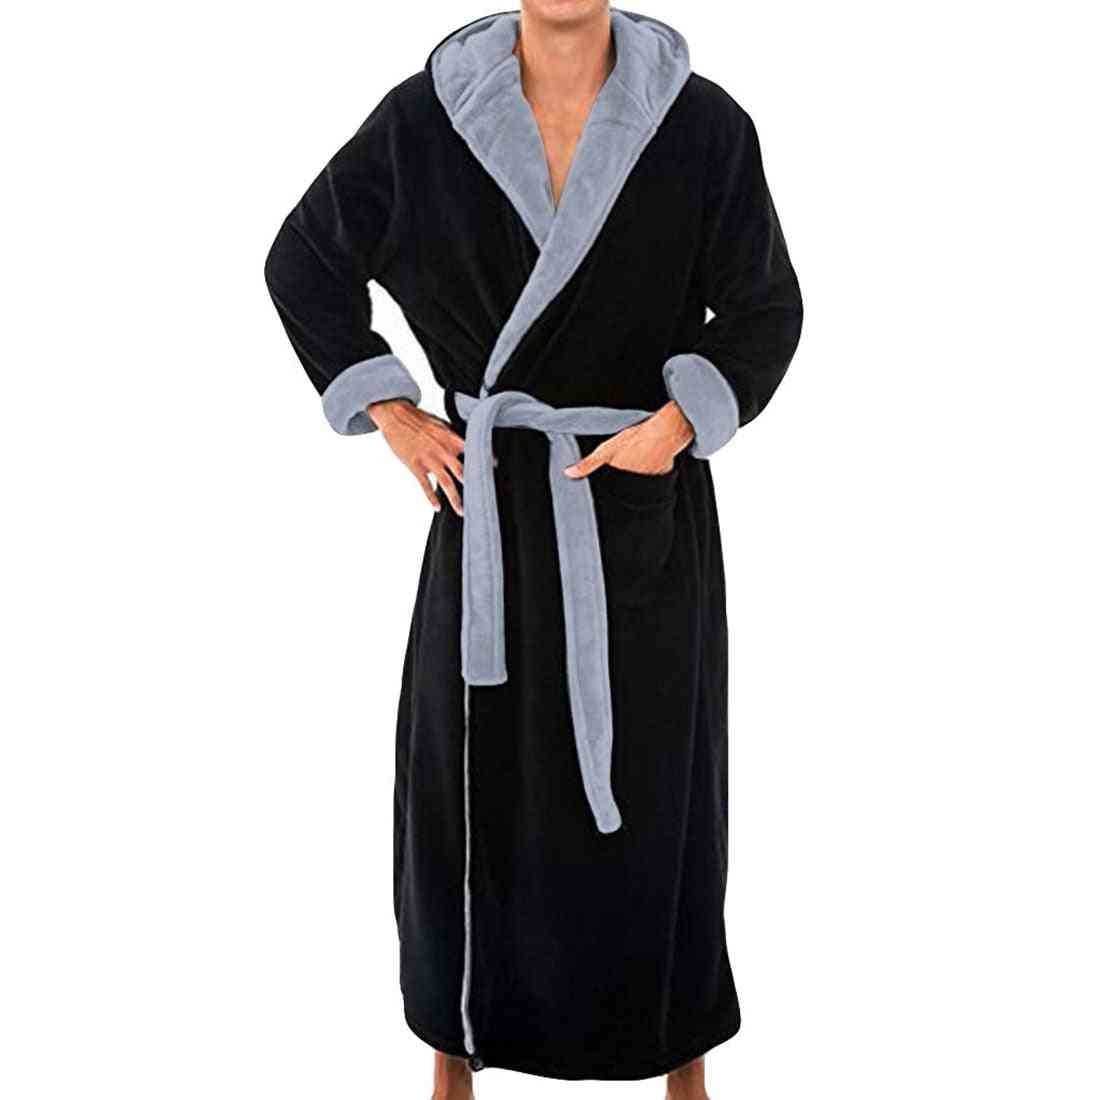 Flanelowa bluza z kapturem gruby dorywczo zimowy jesień długi kimono szlafrok piżama koszula nocna